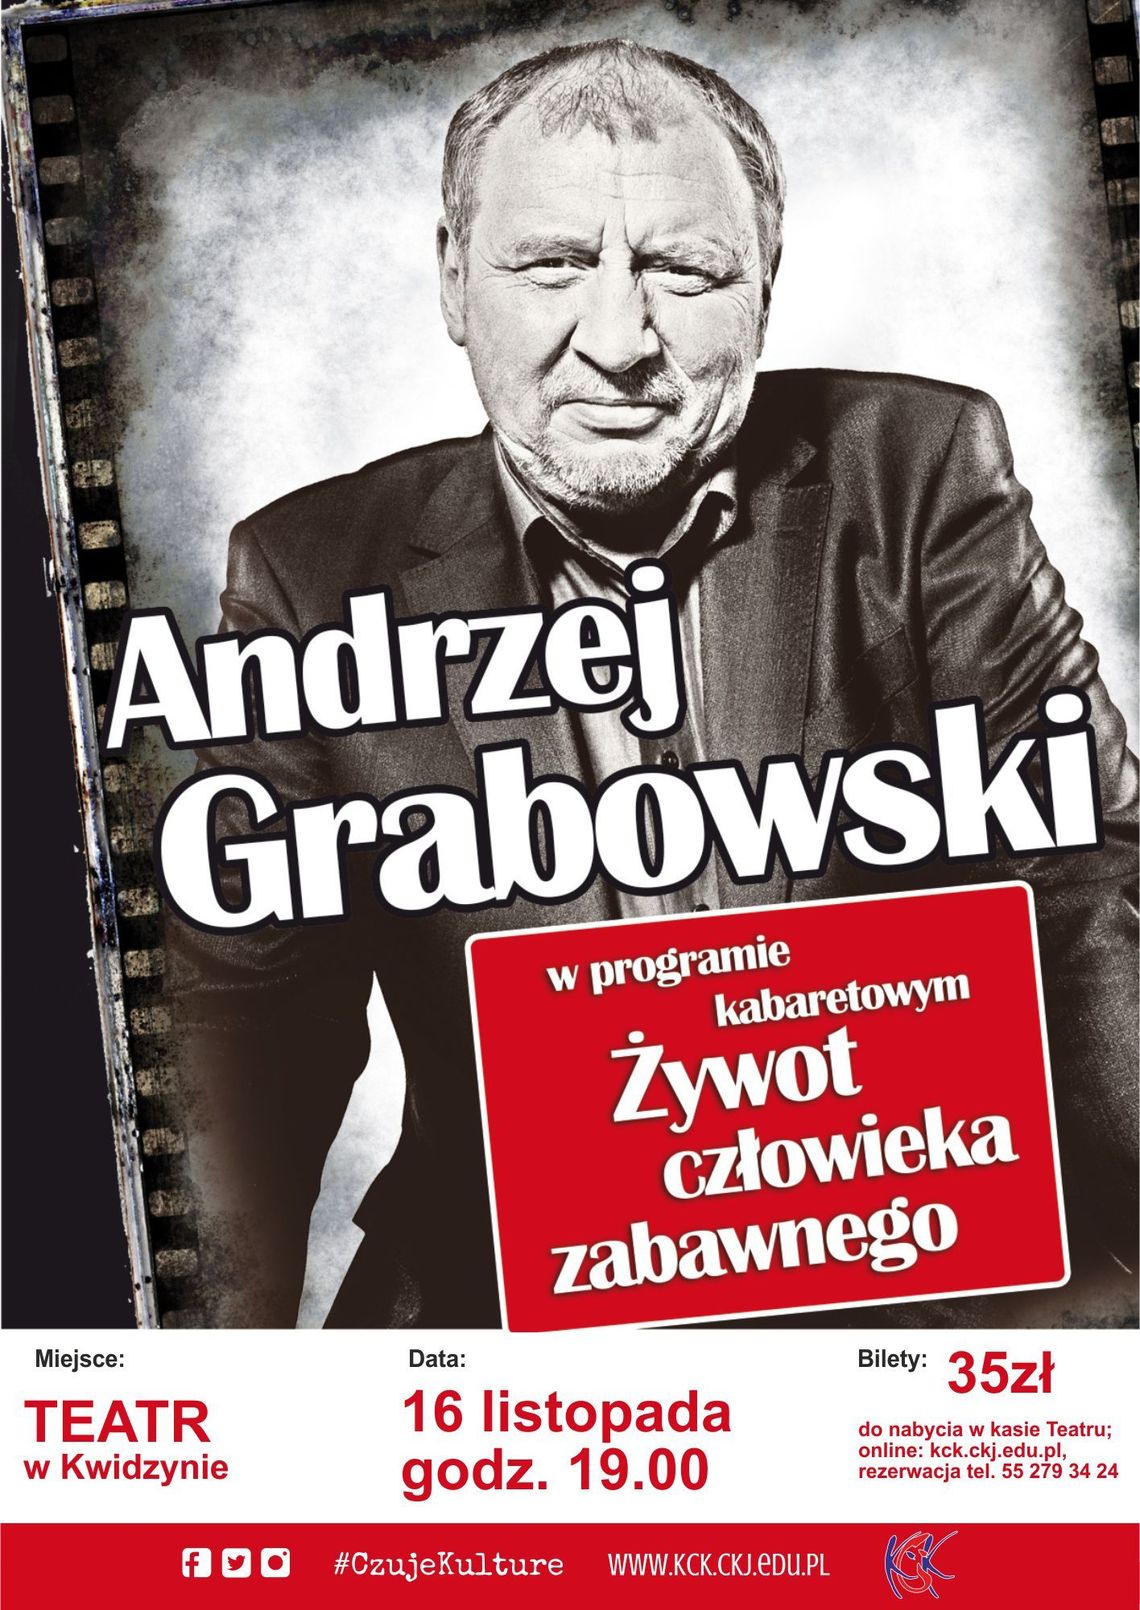 Andrzej Grabowski - w programie kabaretowym "Żywot człowieka zabawnego".